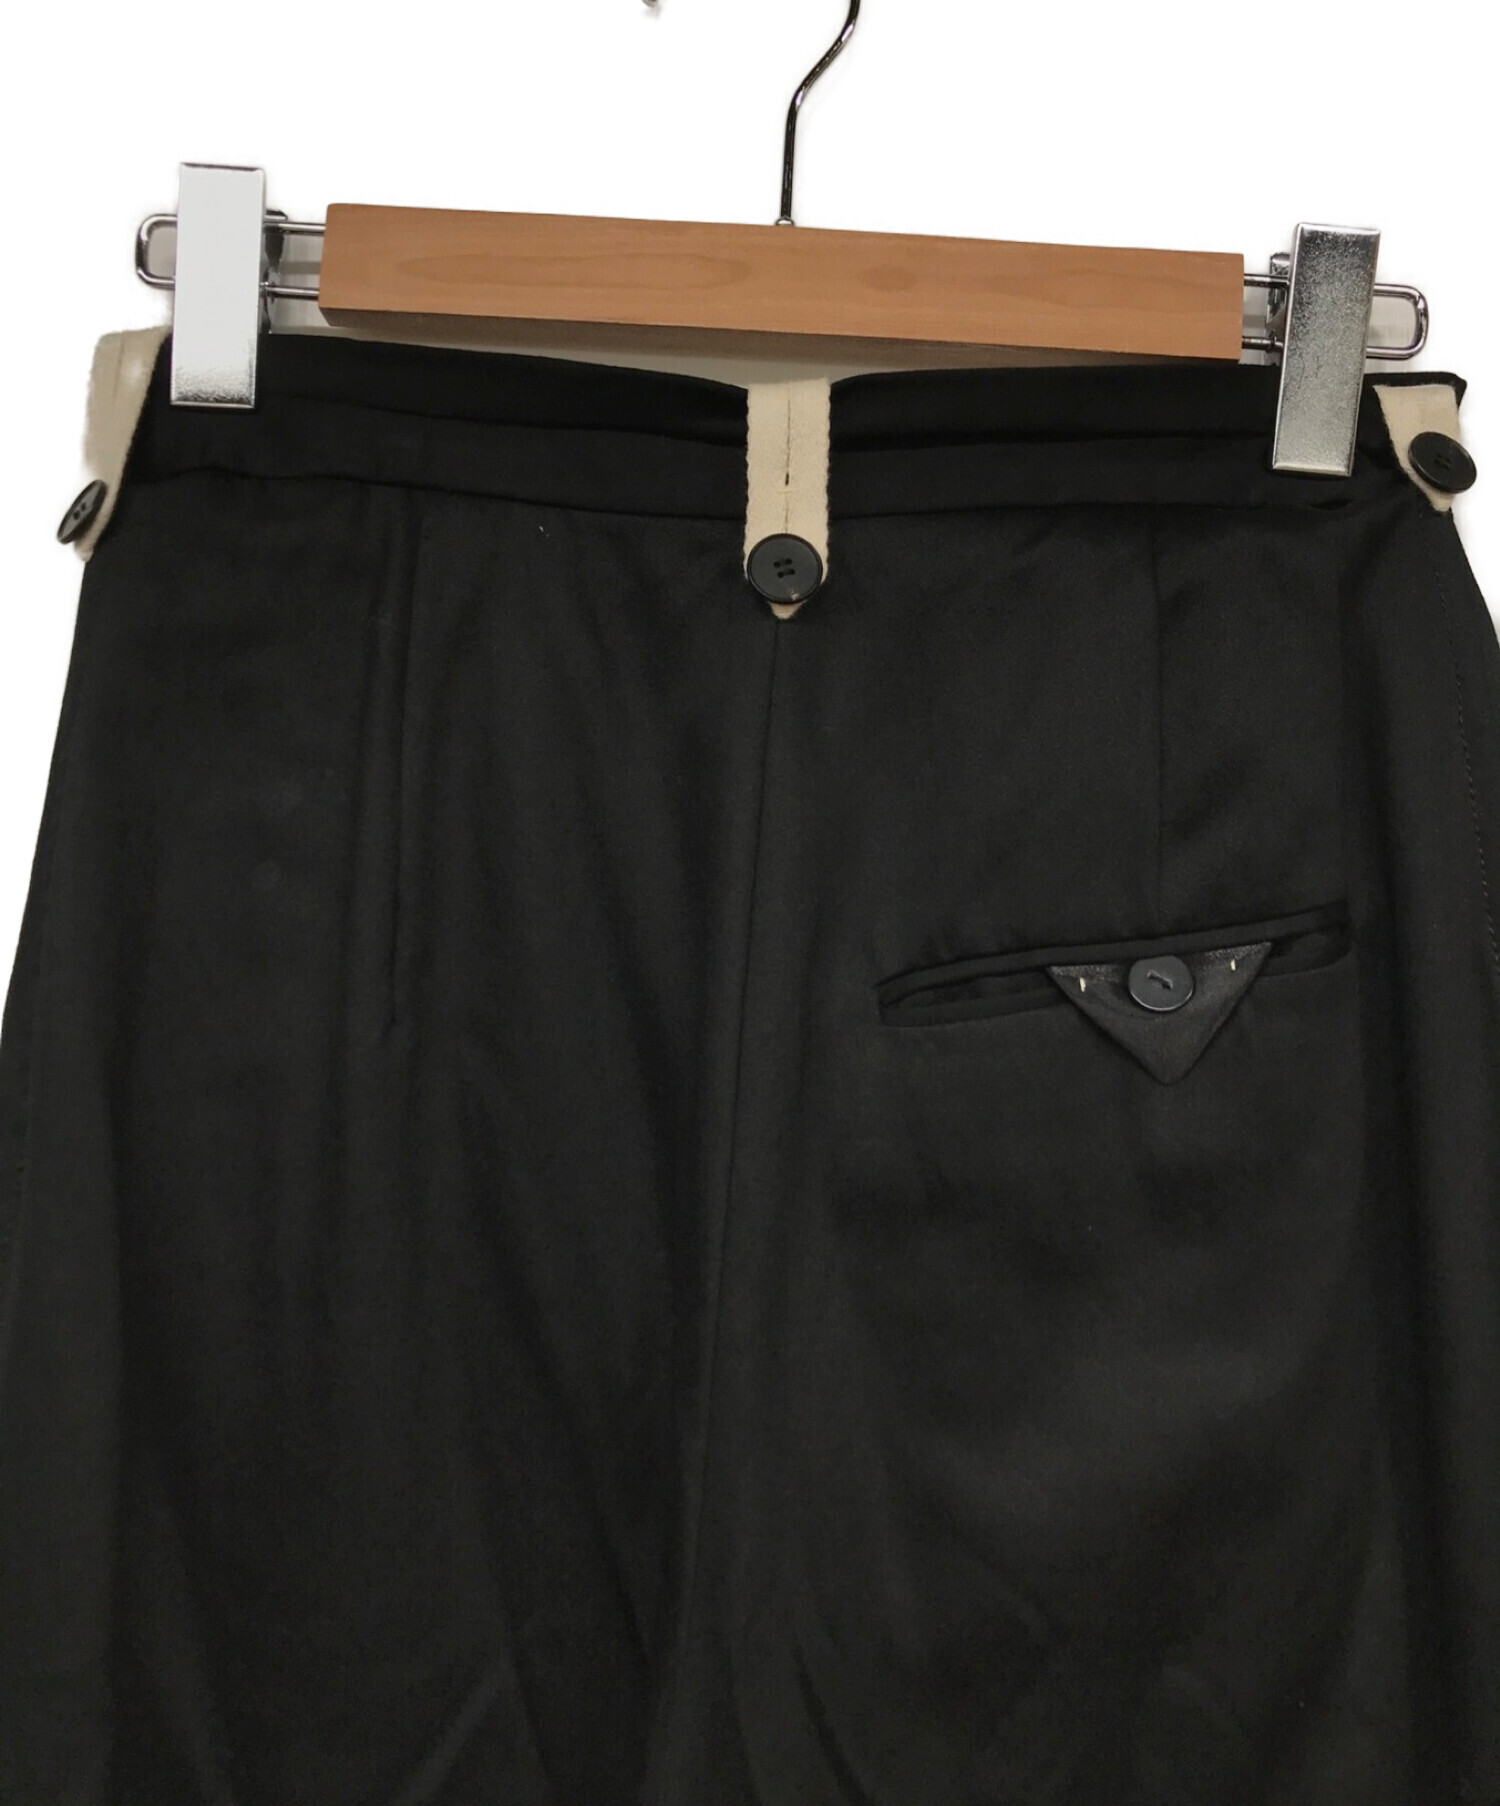 パンツ Hollowout Satin Trousers - レディースファッション